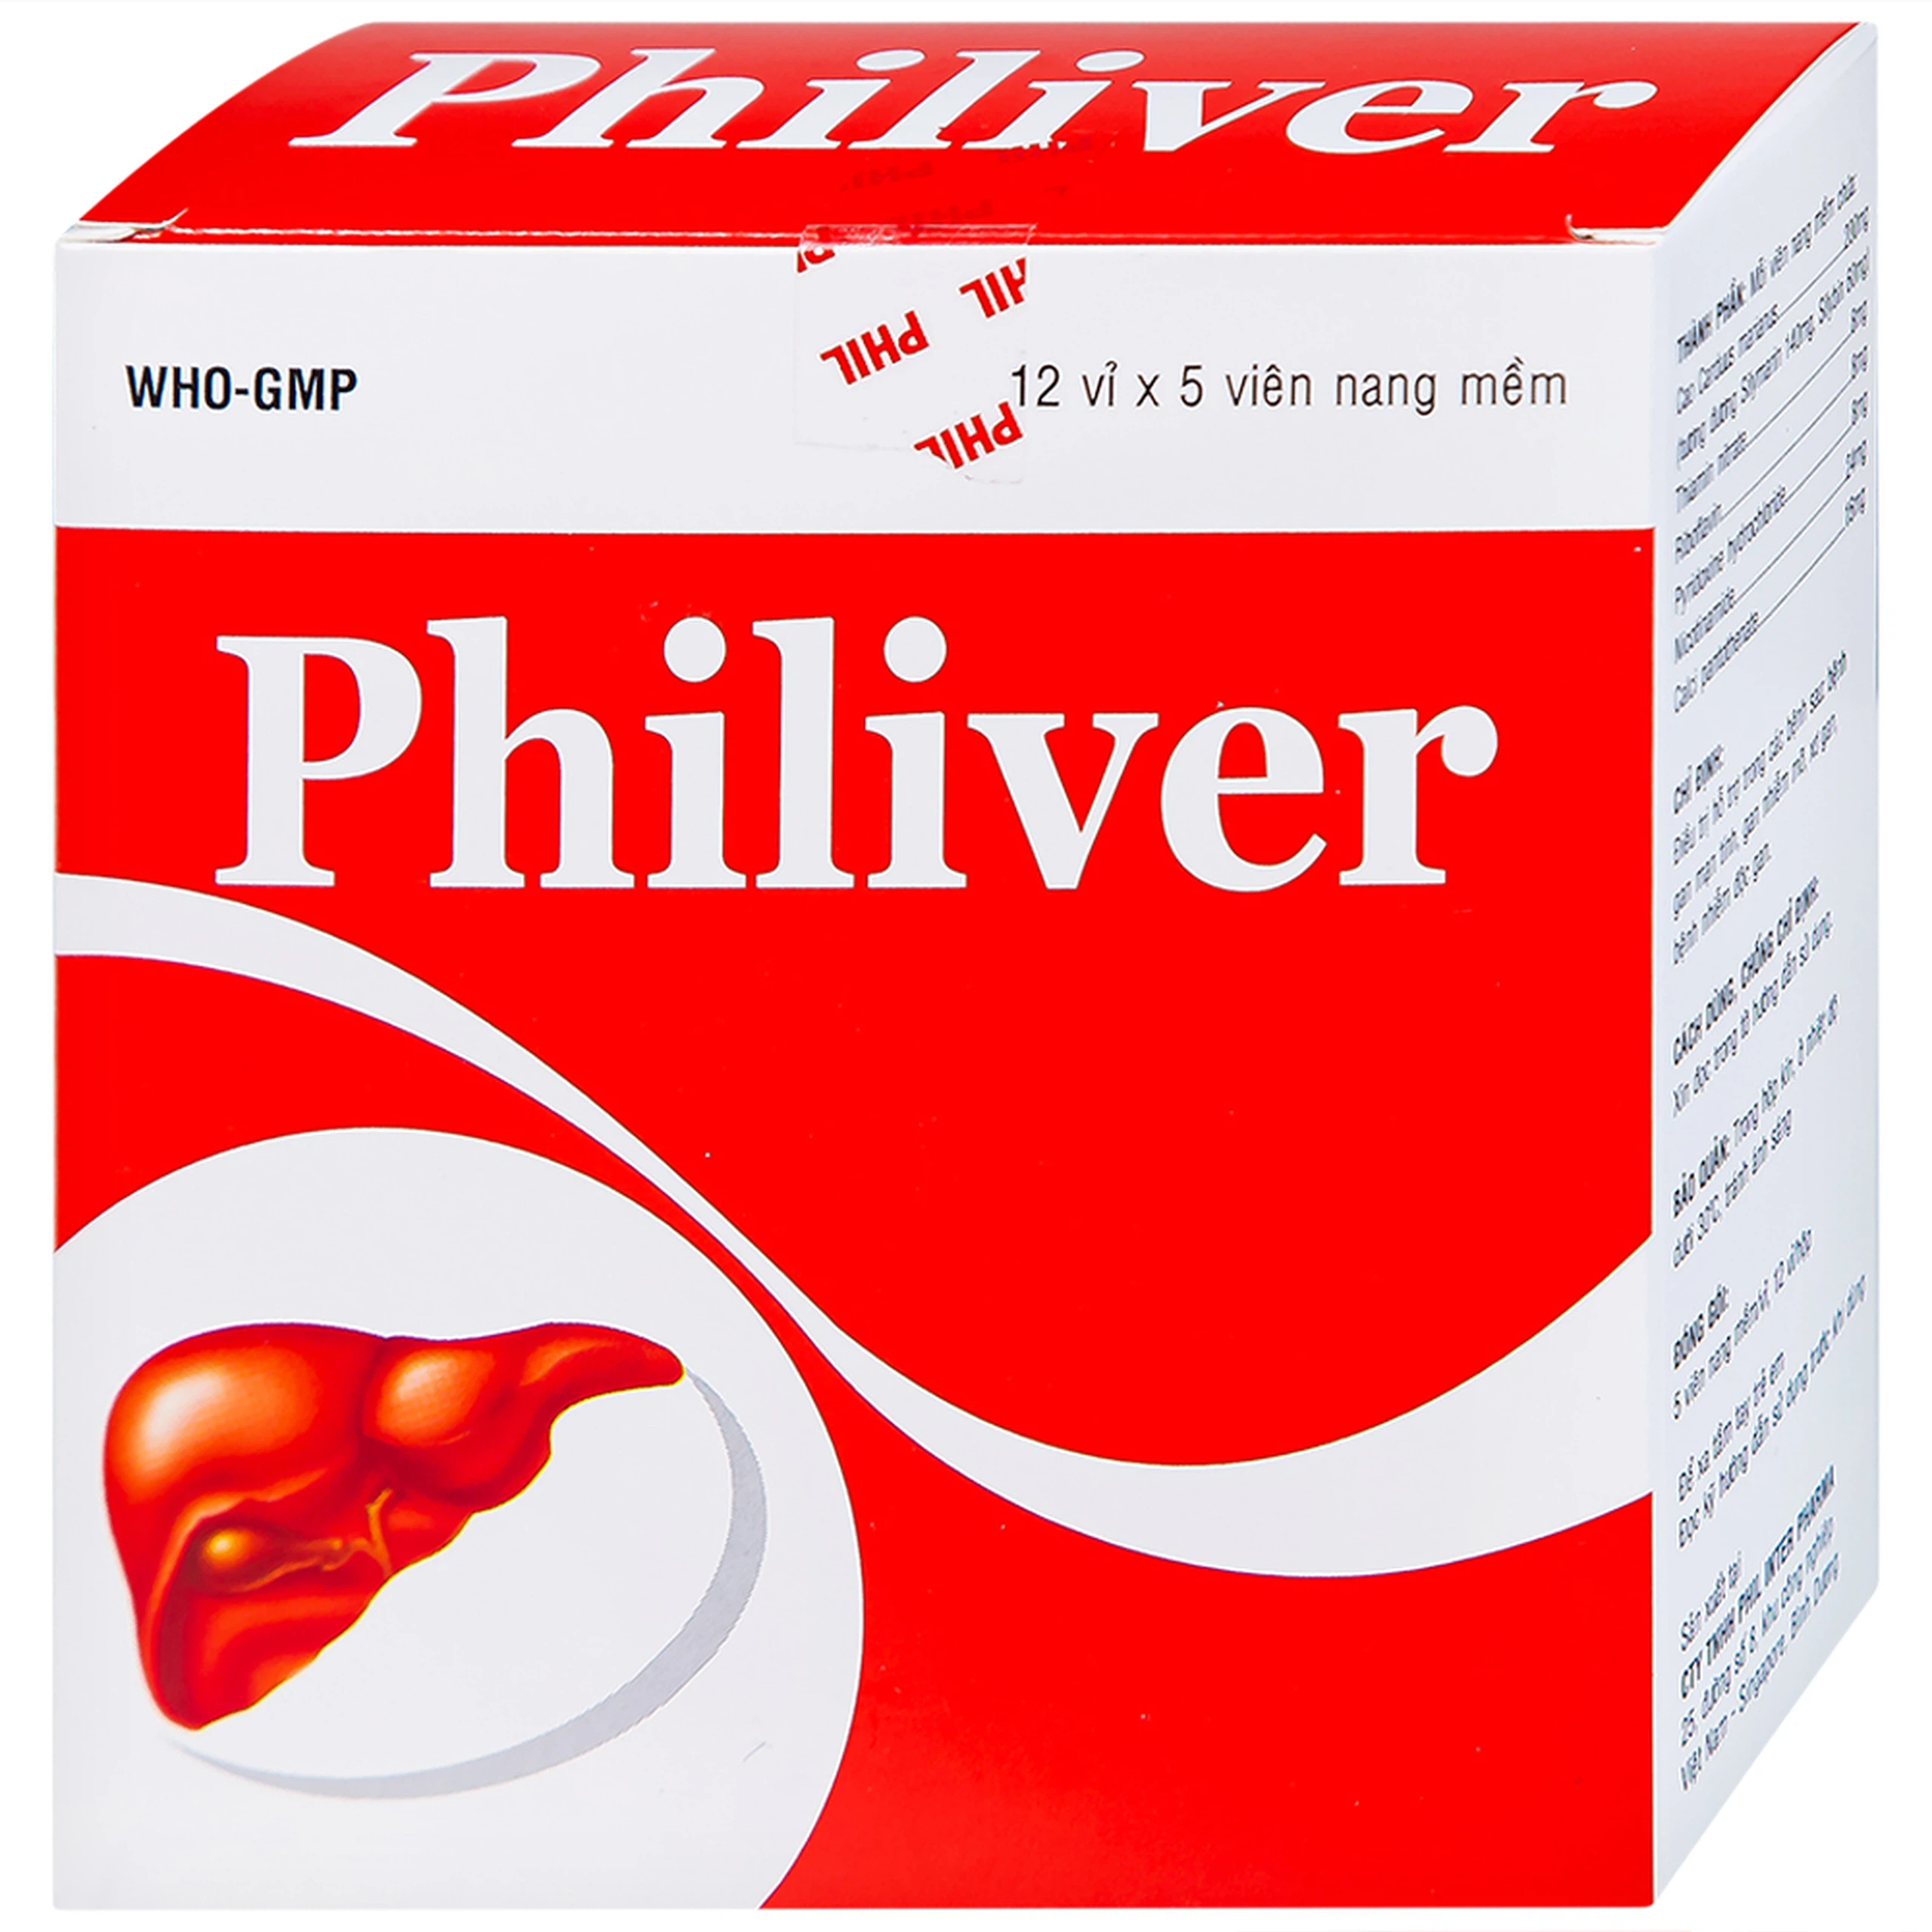 Viên nang mềm Philiver Phil Inter Pharma điều trị bệnh gan mạn tính, gan nhiễm mỡ (12 vỉ x 5 viên)